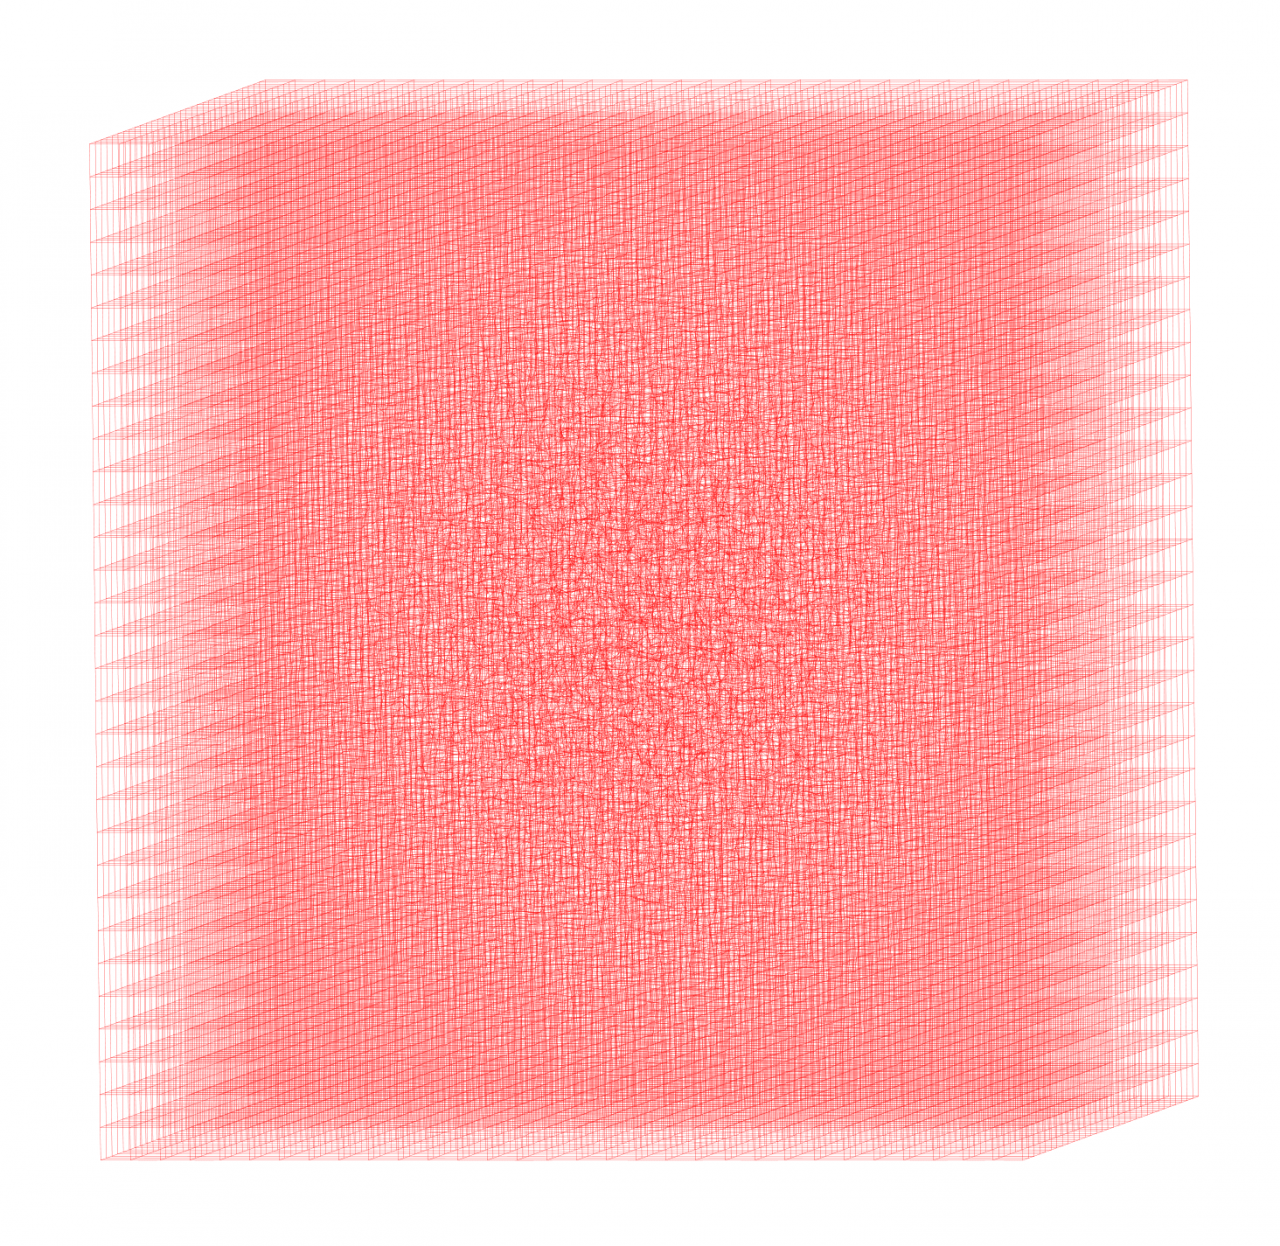 Dreidimensionaler Körper roter Gitterlinien